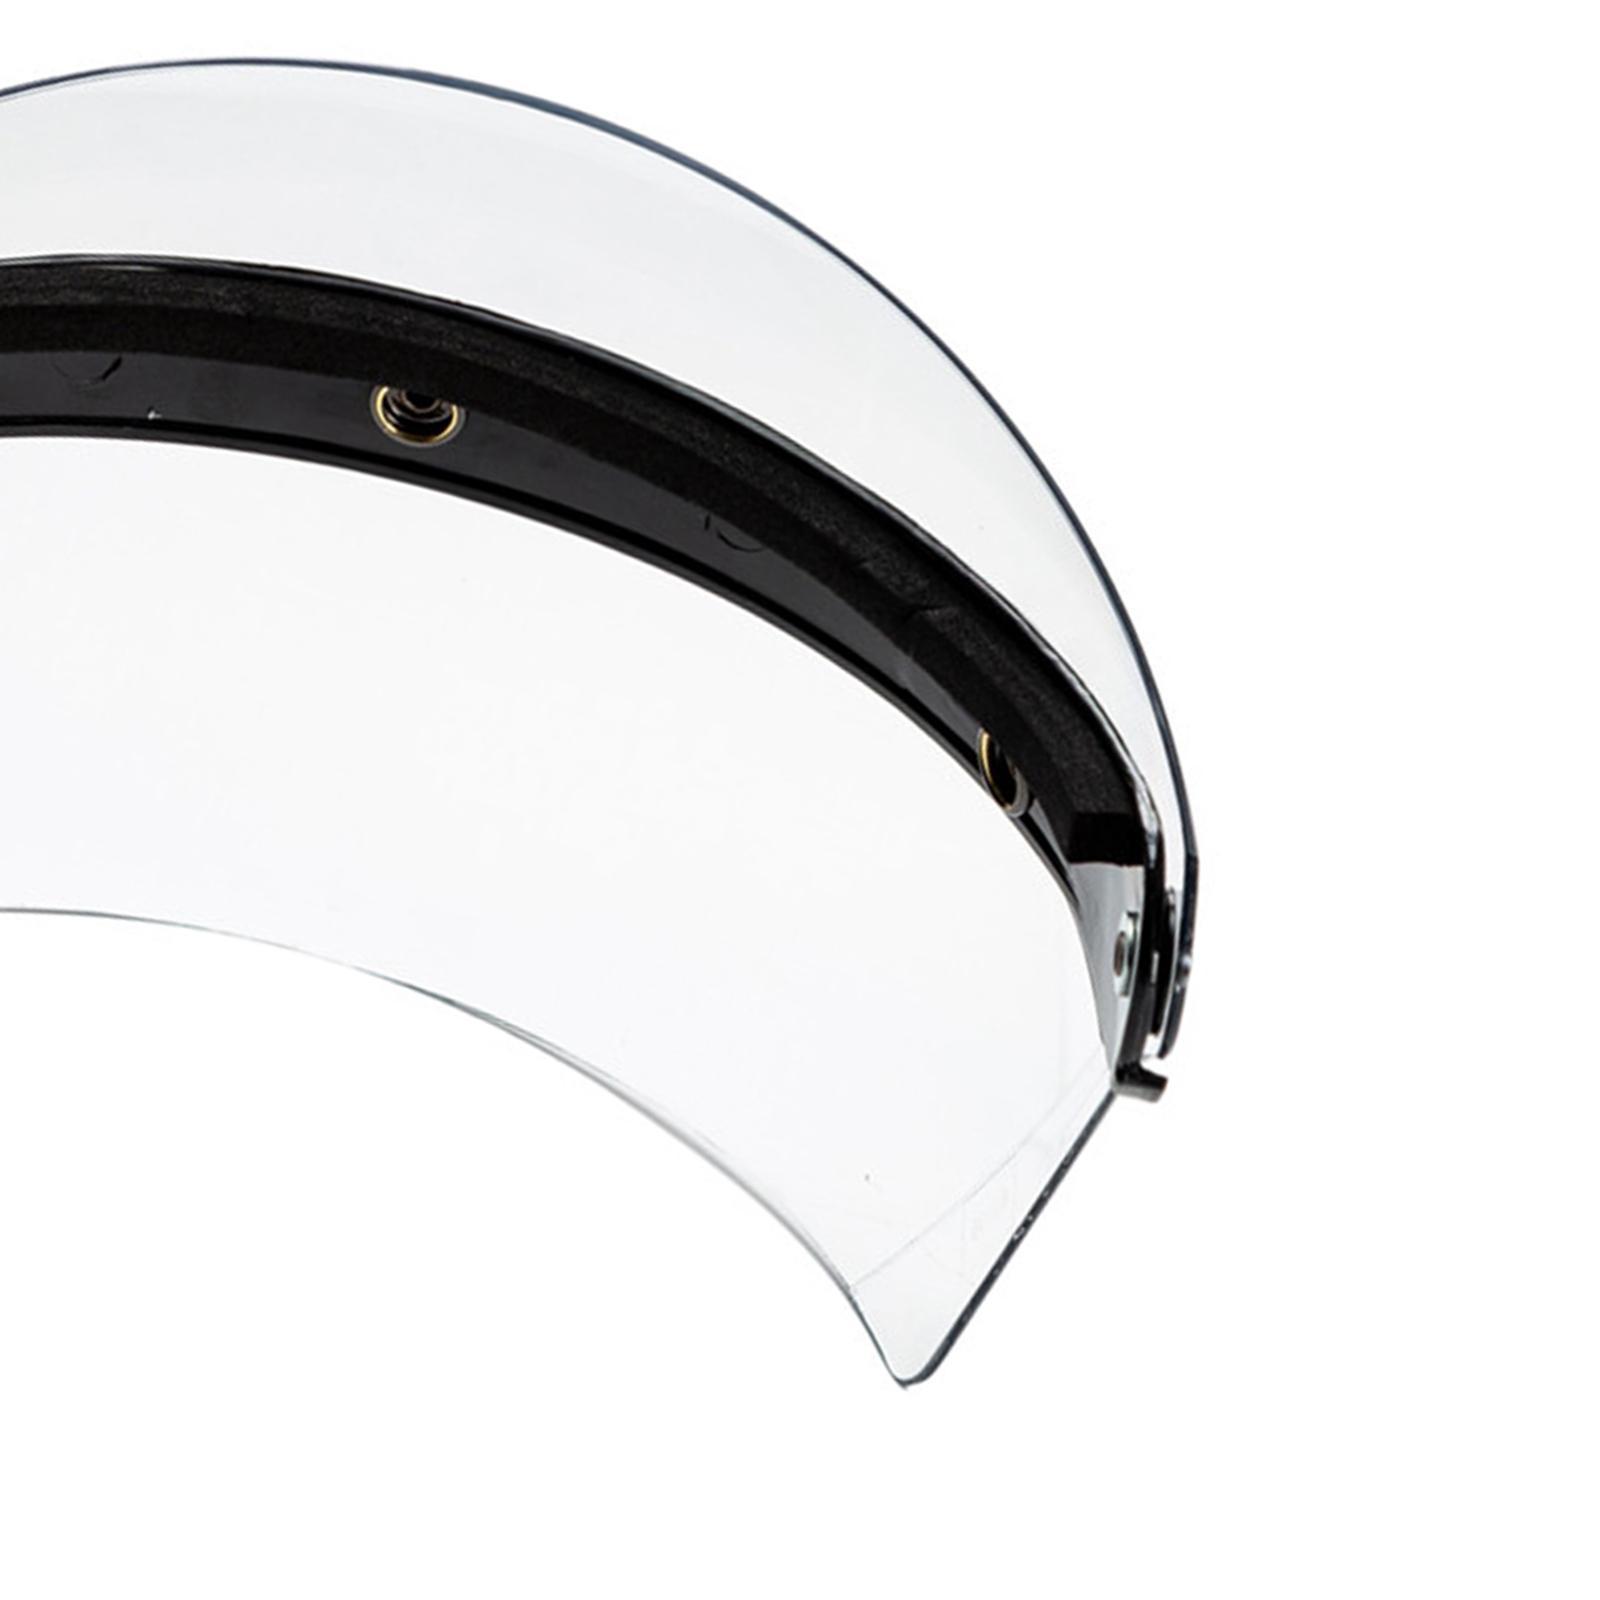 2X Open Face Wind Shield 3 Snaps Helmet Visor Wind Shield Lens Universal Clear